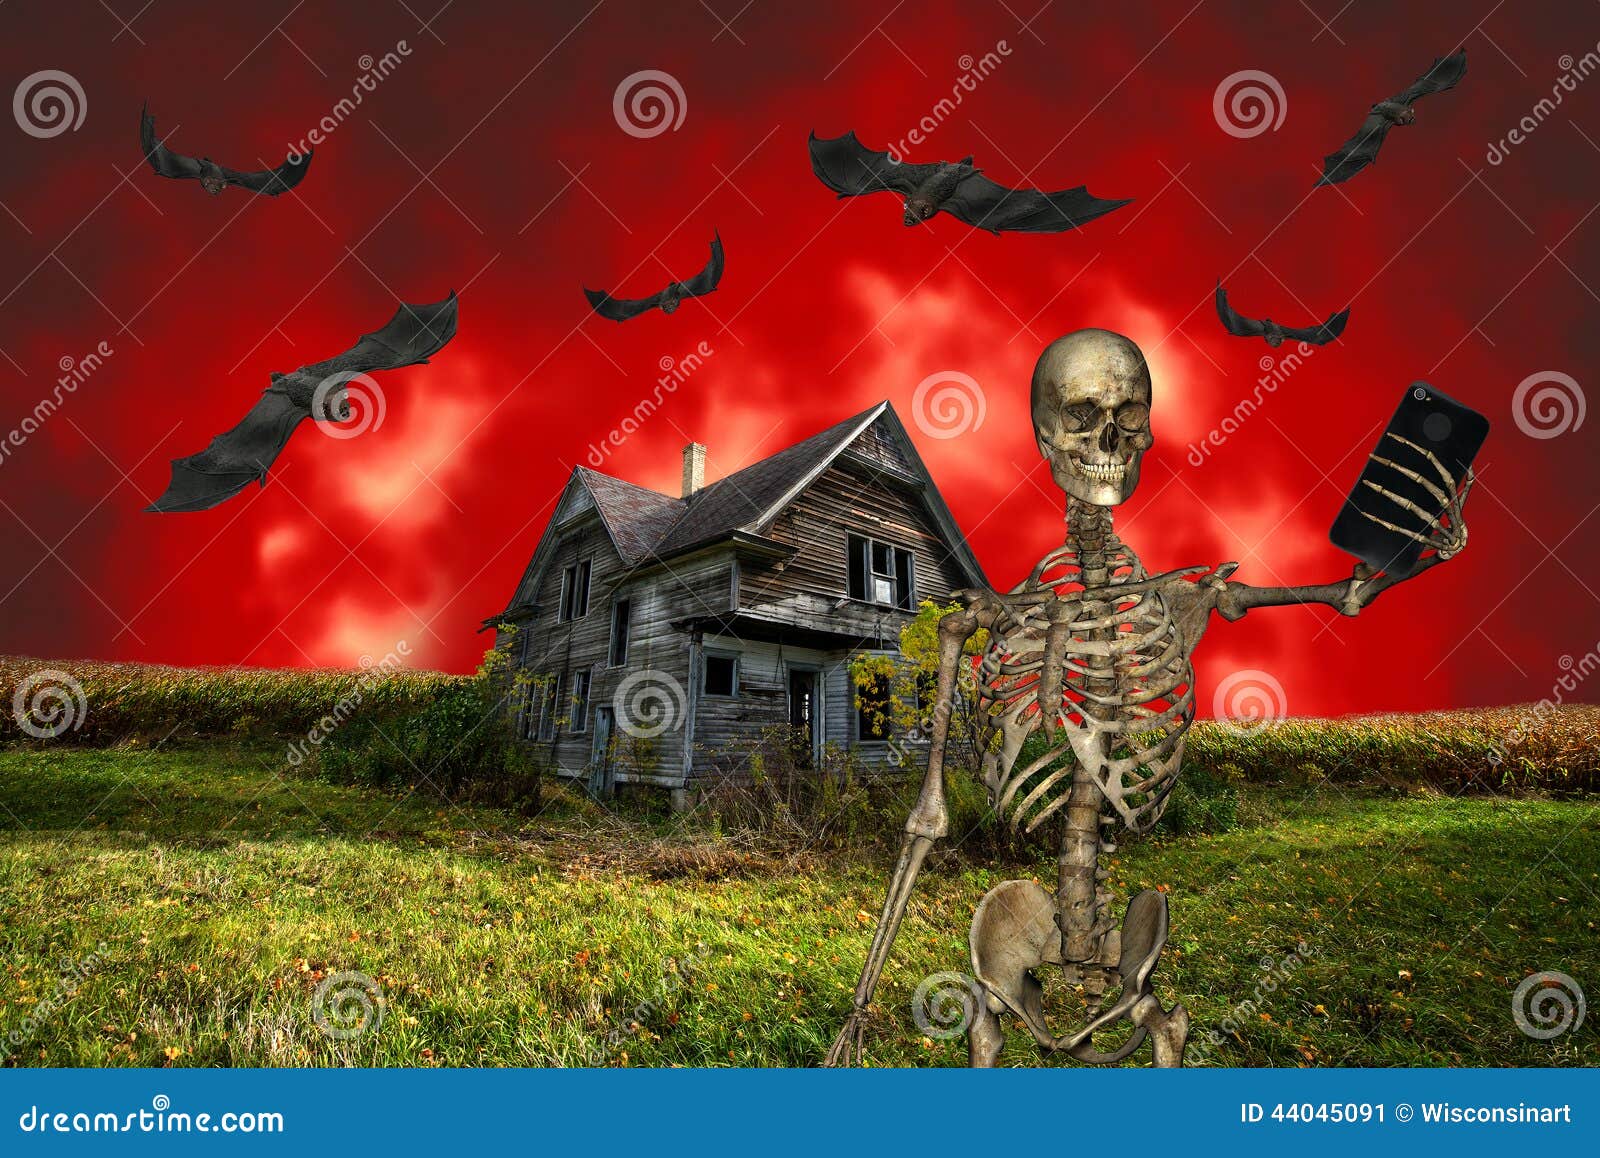 funny halloween selfie, skeleton, haunted house